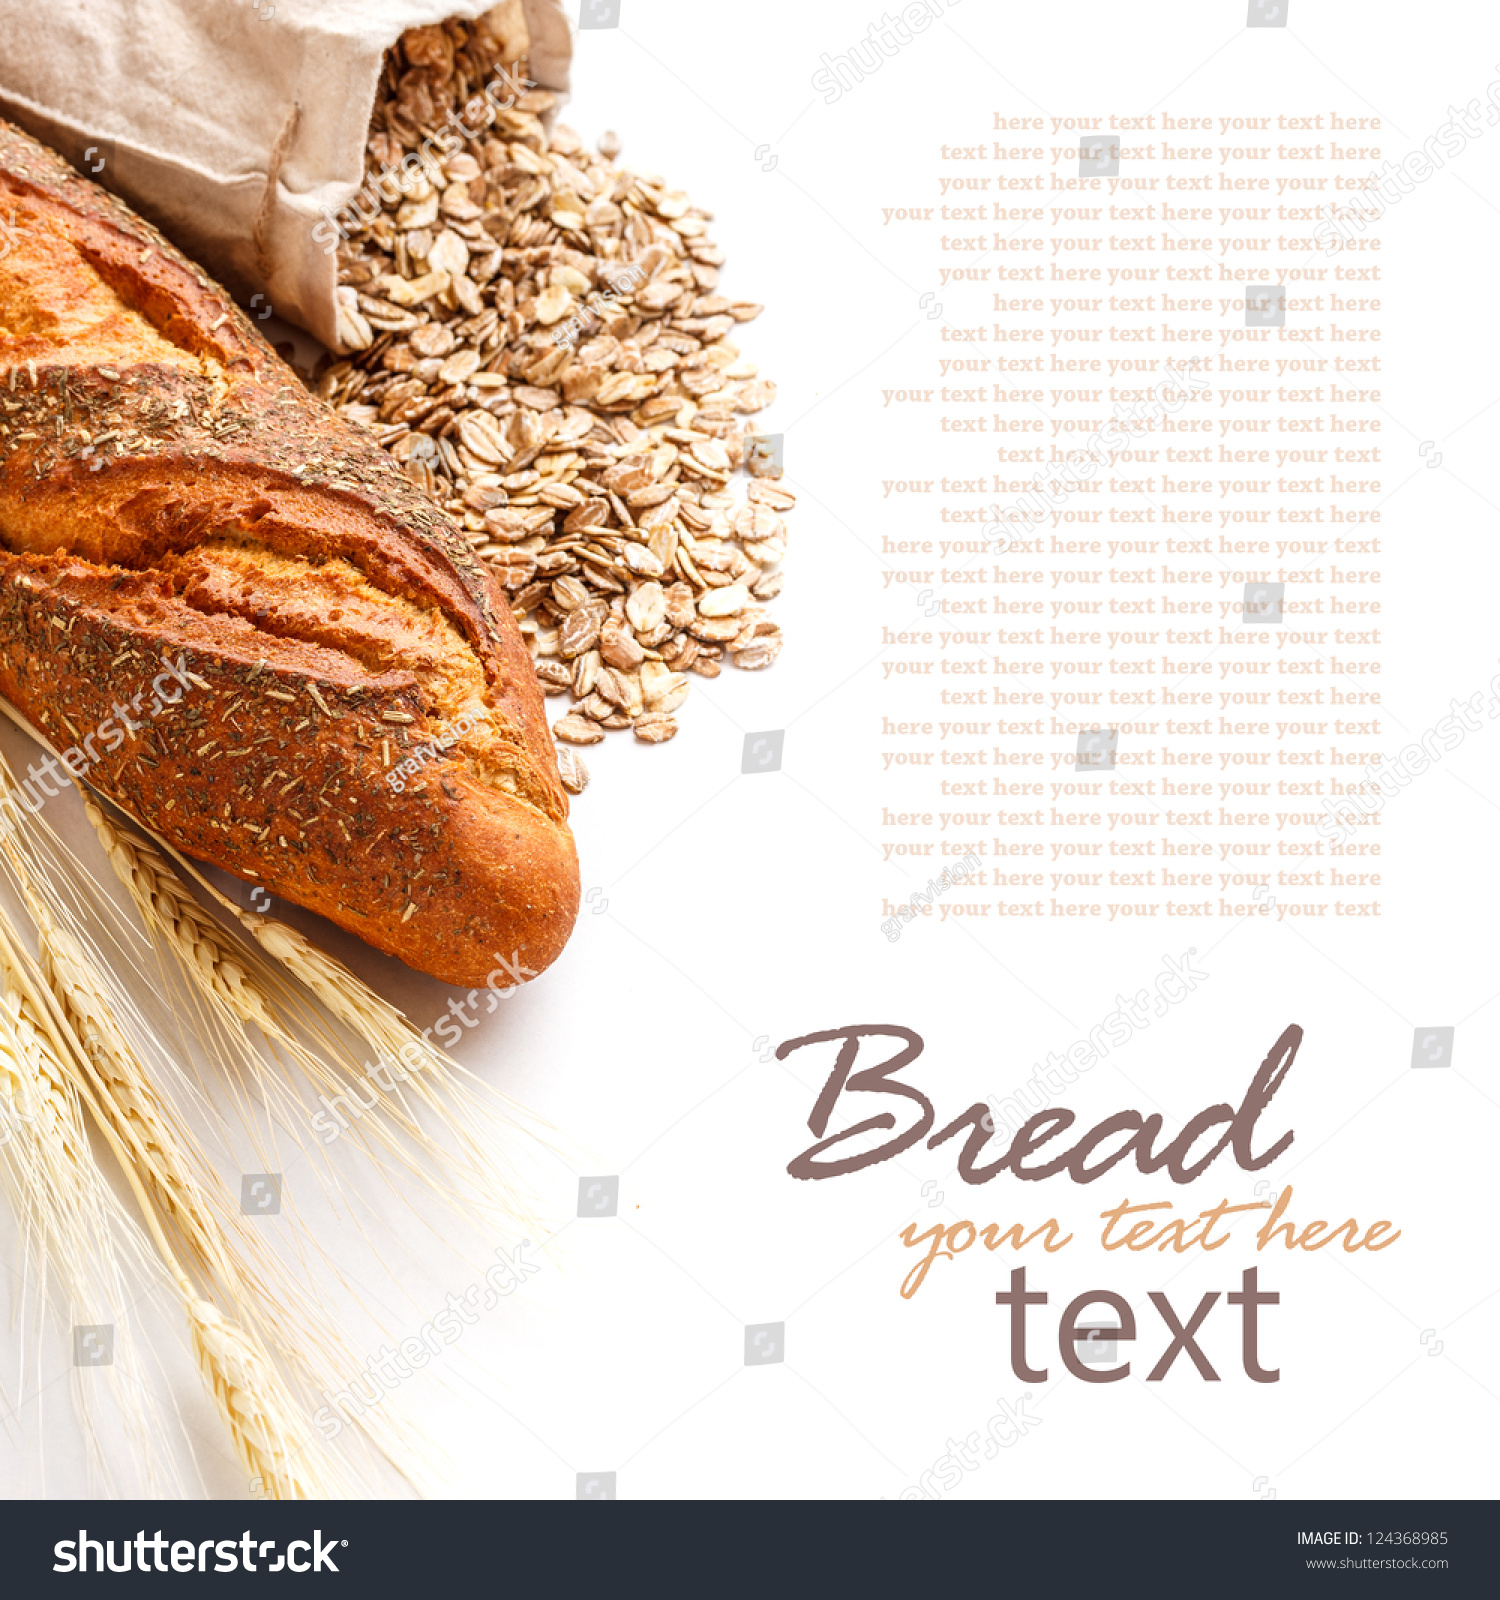 Международный день хлеба